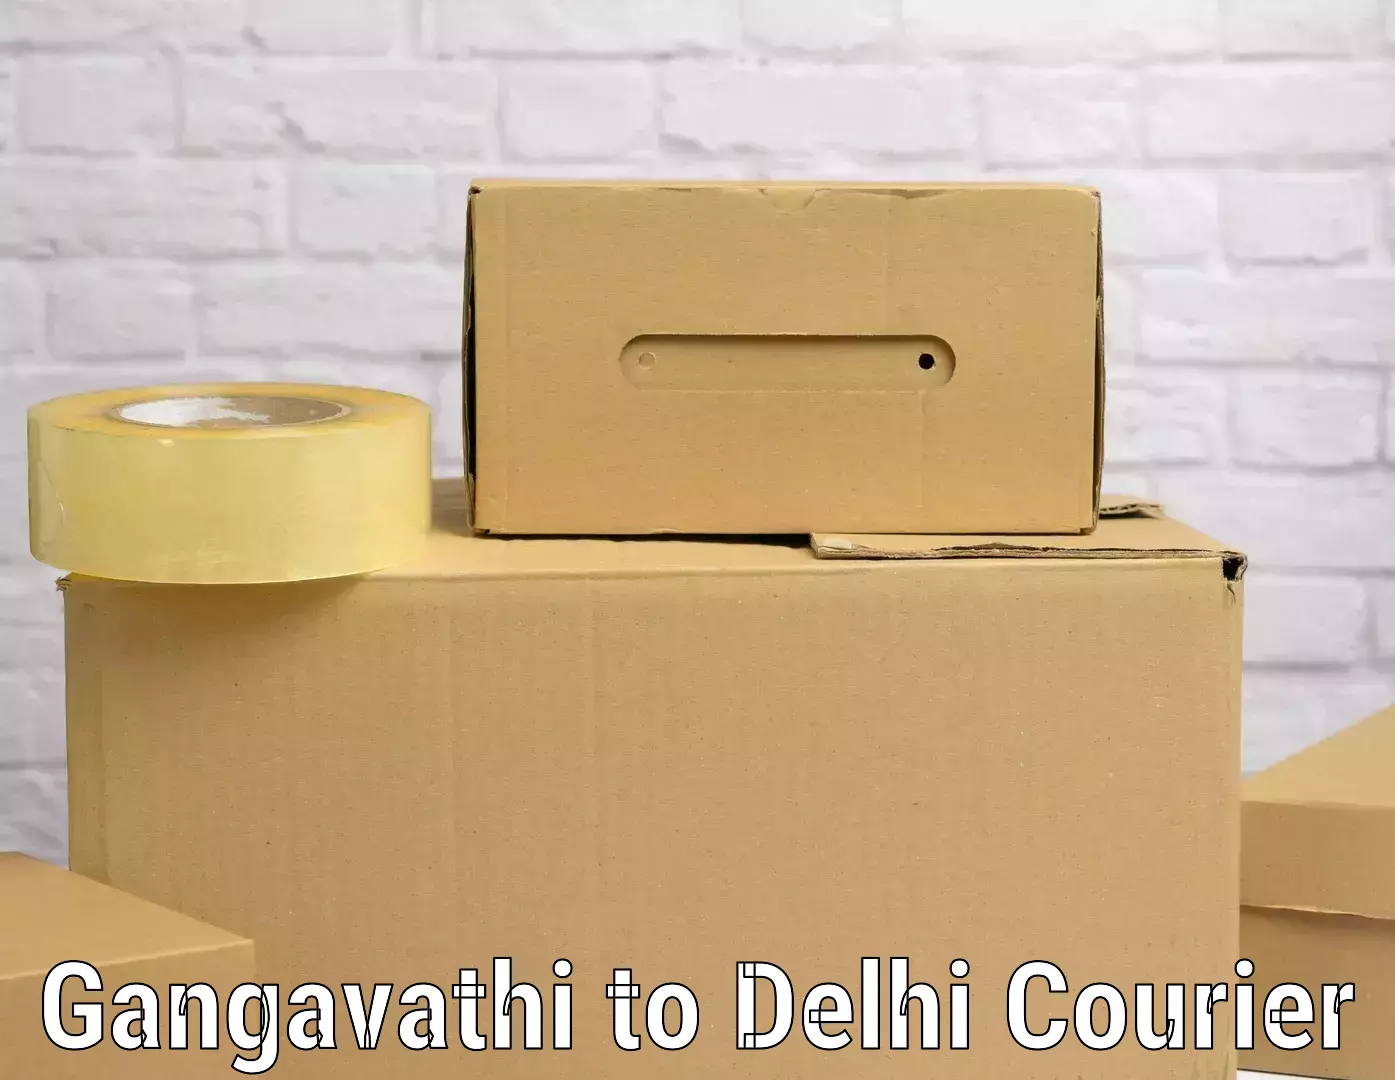 Luggage transit service Gangavathi to Delhi